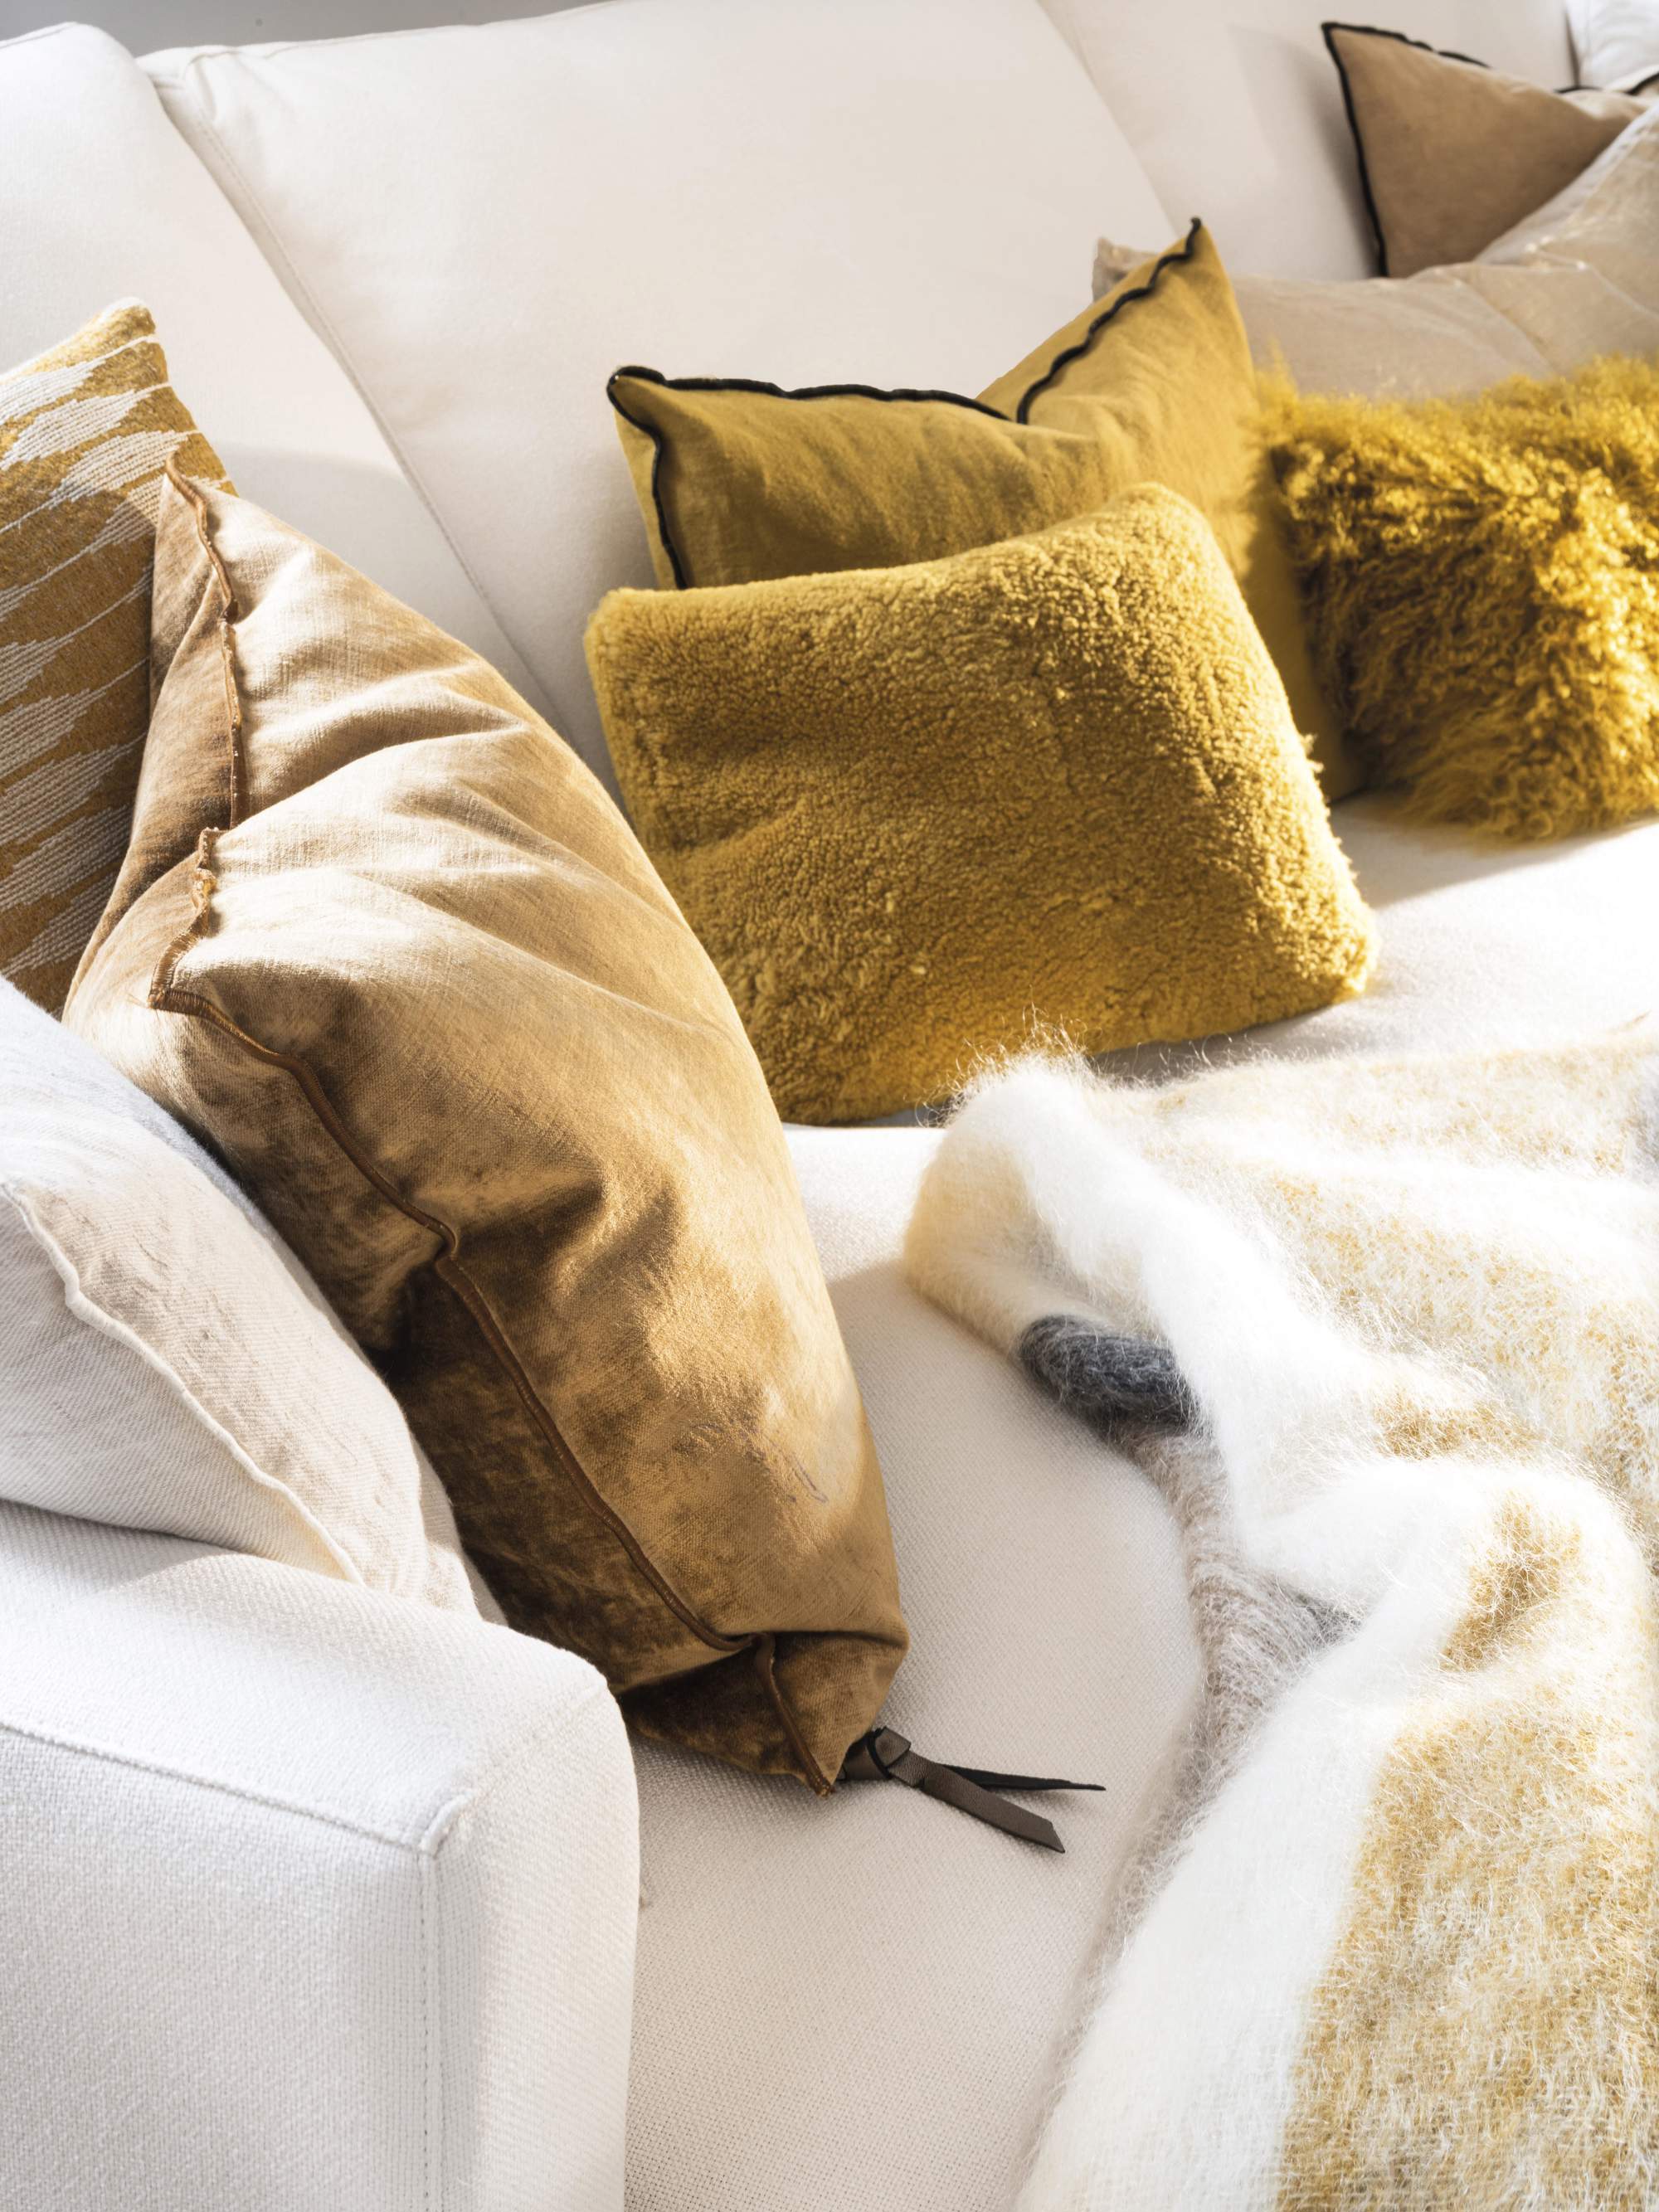 Detalle de cojines mostaza, beige y blanco sobre sofá blanco.